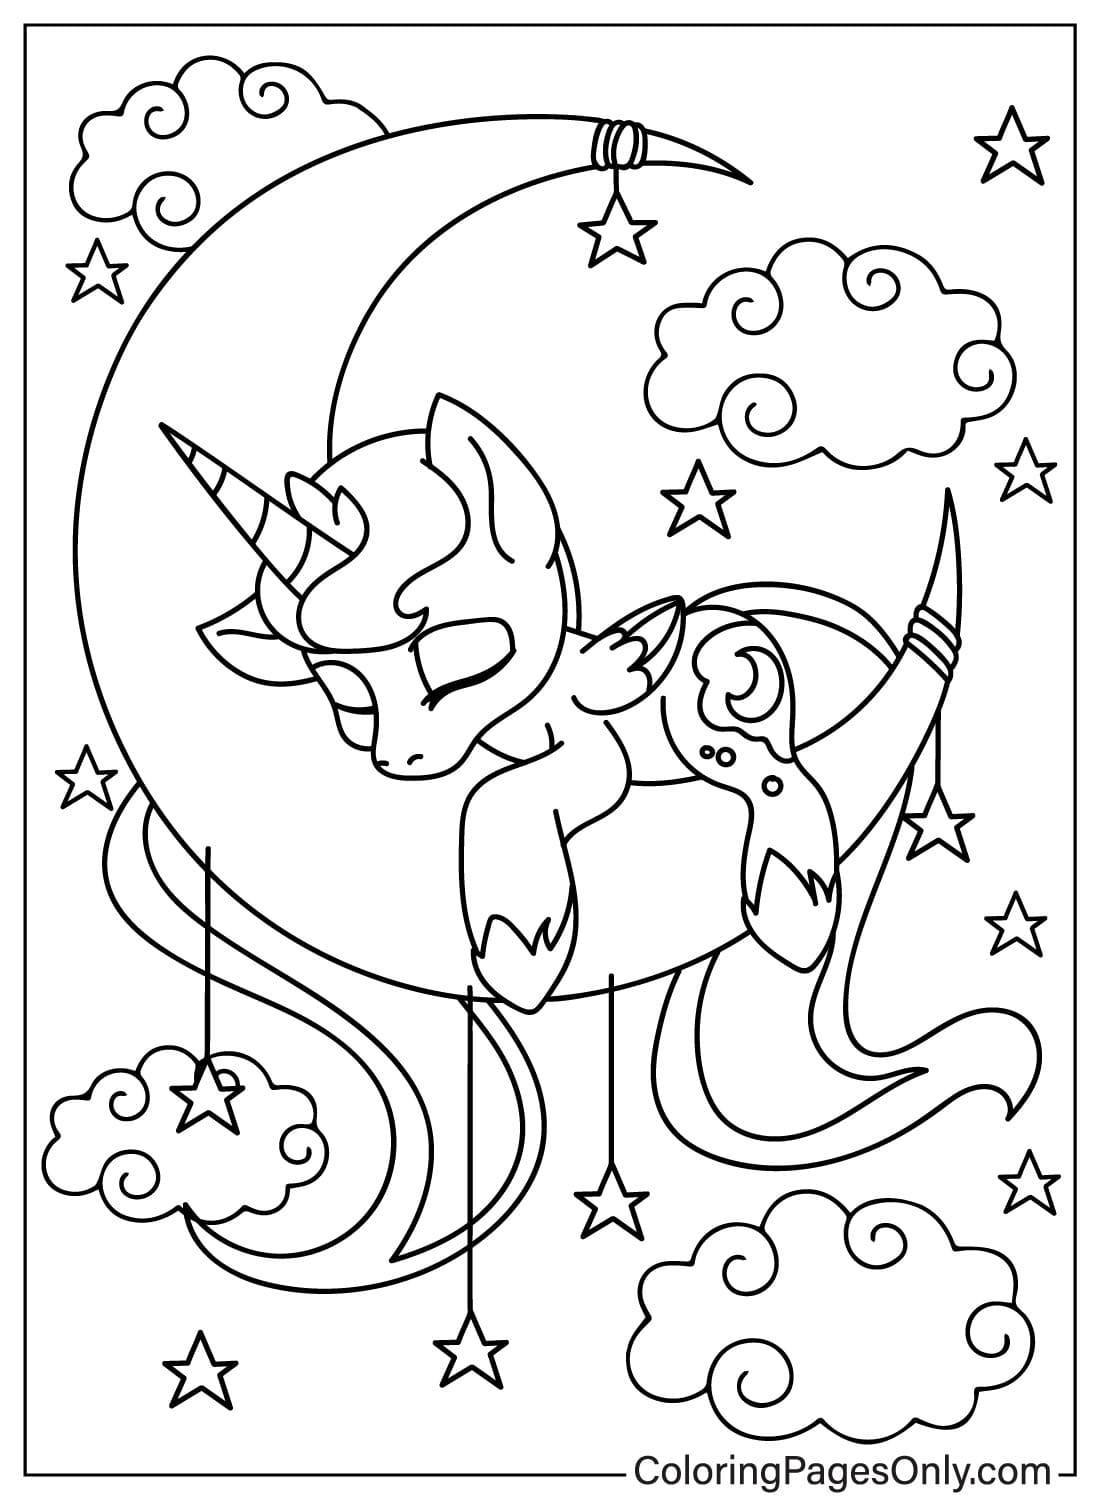 La principessa Luna dorme sulla luna Pagina da colorare della principessa Luna